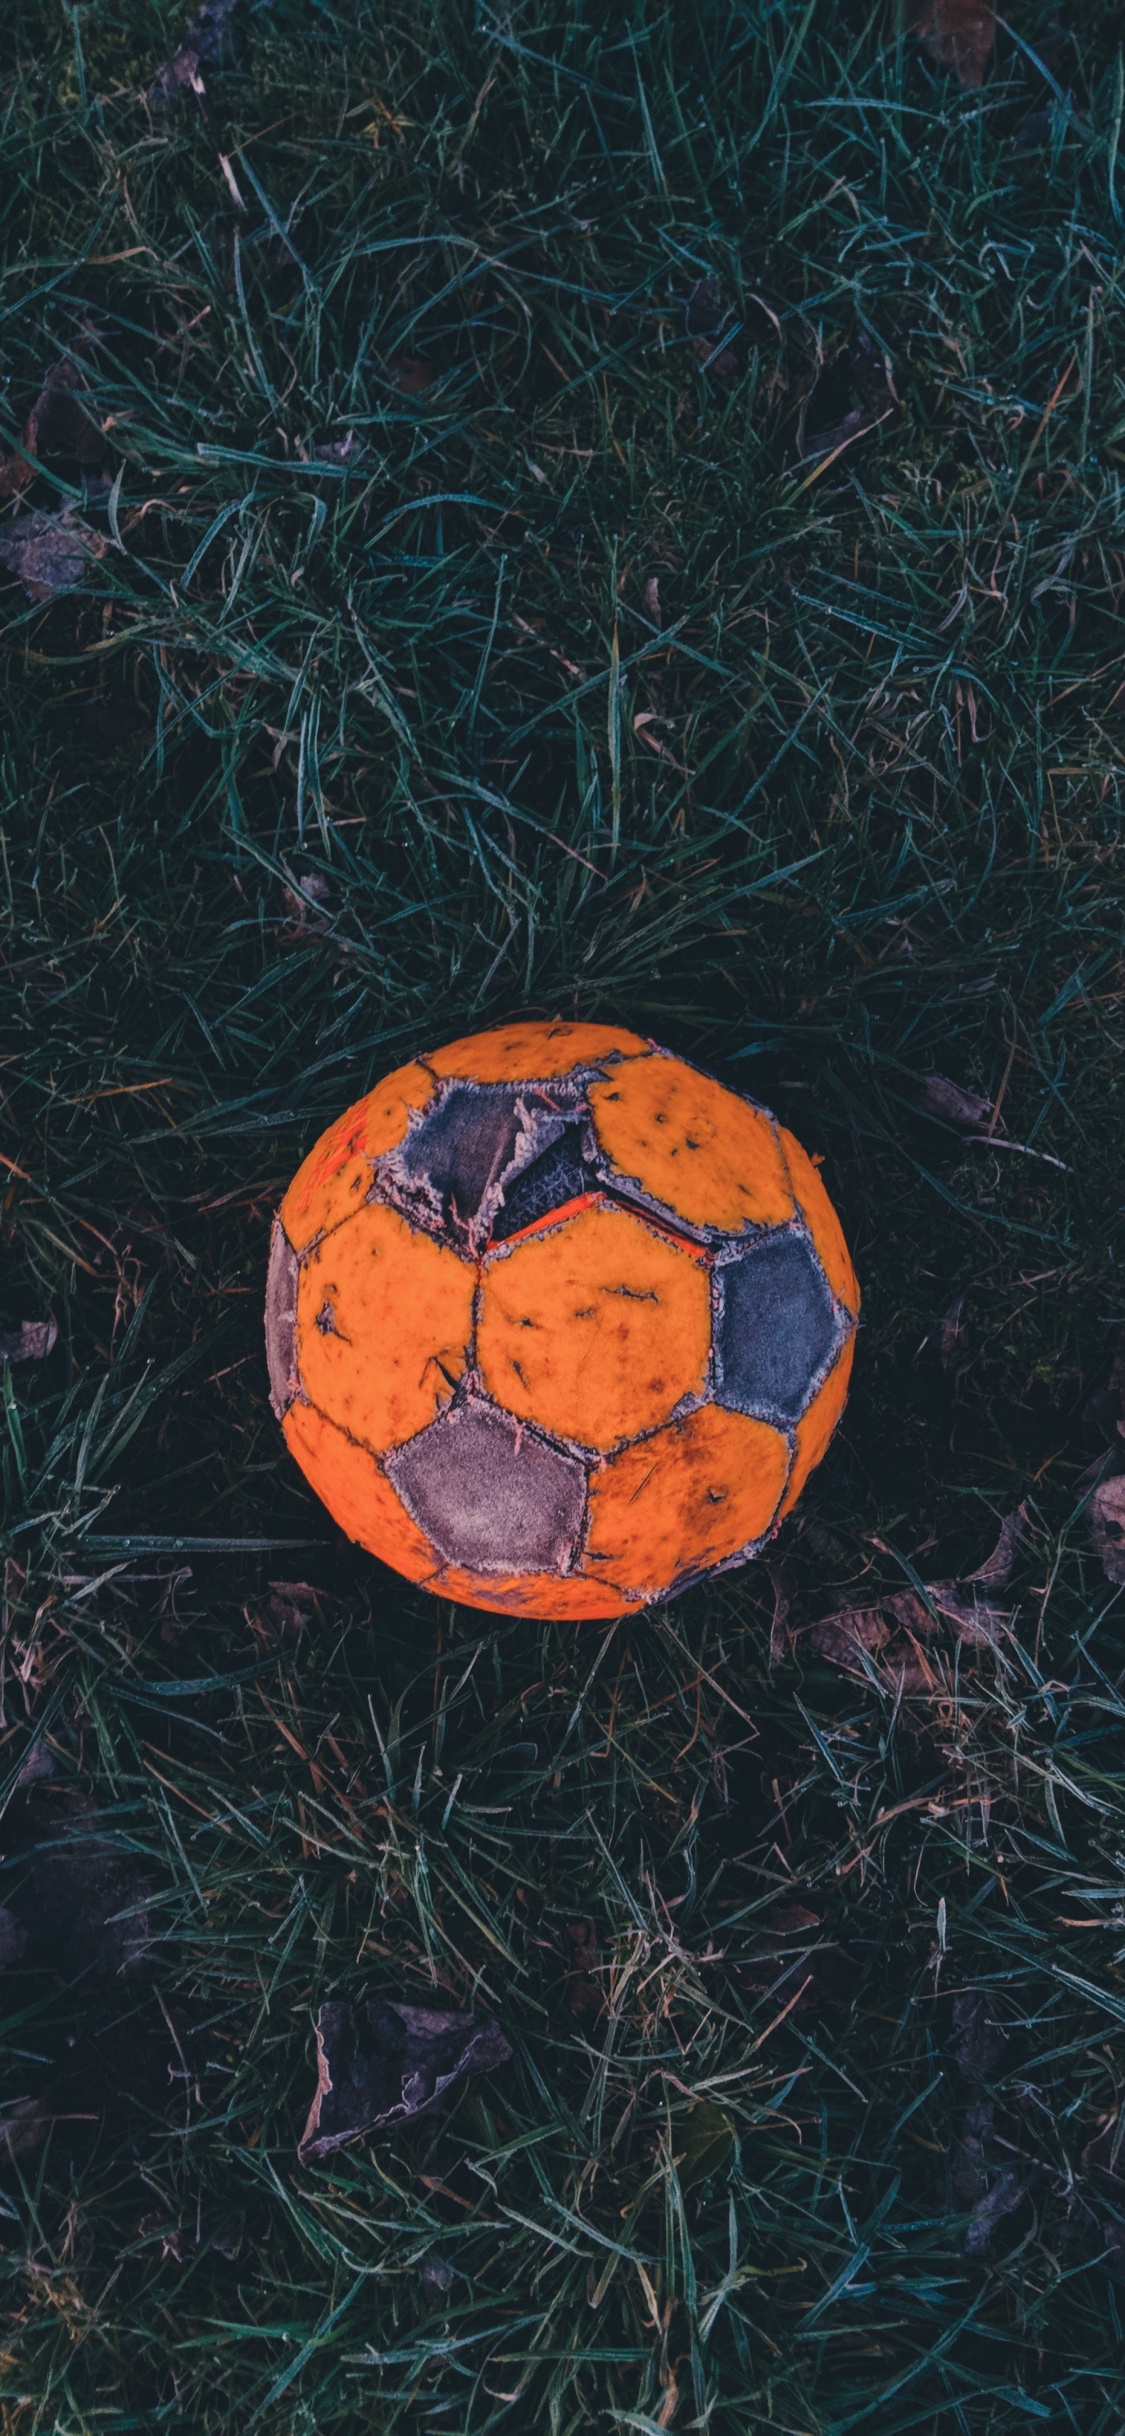 Balón de Fútbol Naranja y Negro Sobre la Hierba Verde. Wallpaper in 1125x2436 Resolution